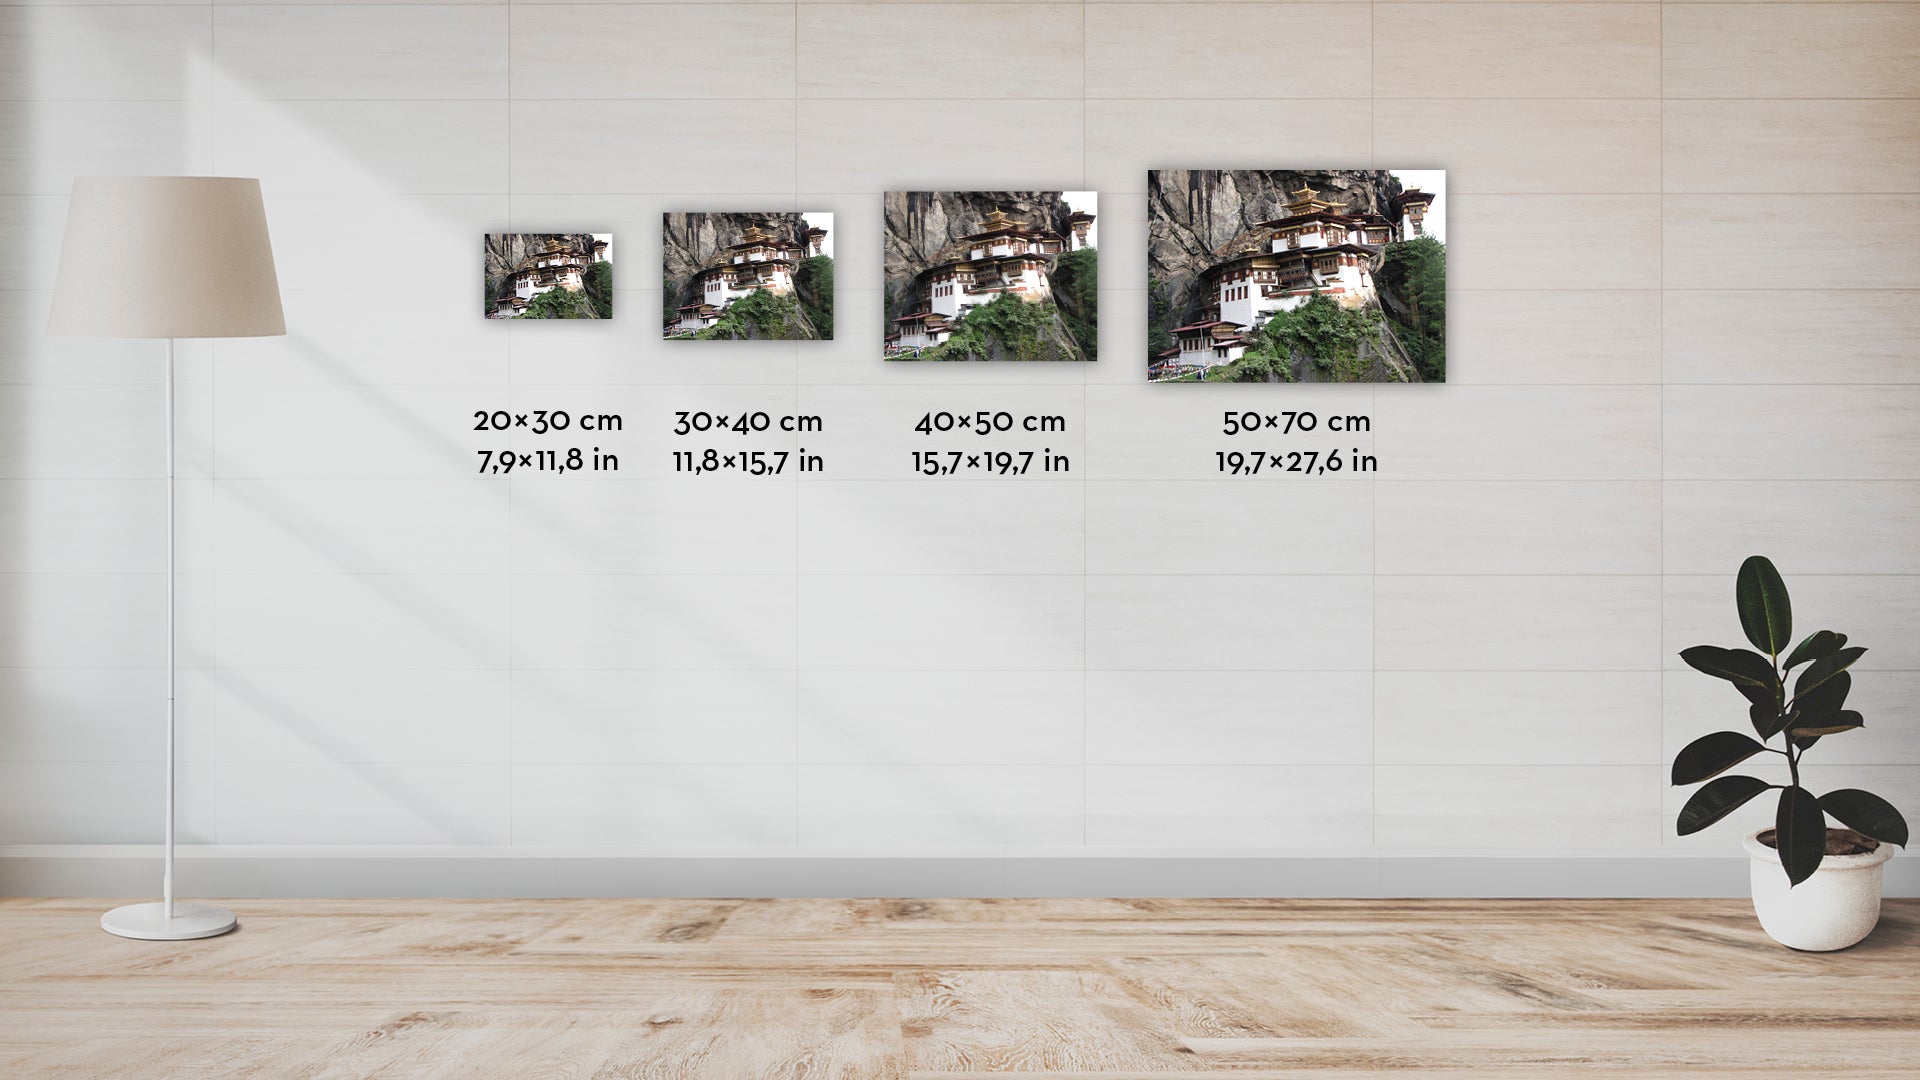 Tigrisfészek Kolostor II. - limitált szériás fotográfia különböző méretben és kivitelben - InspiredByBhutan